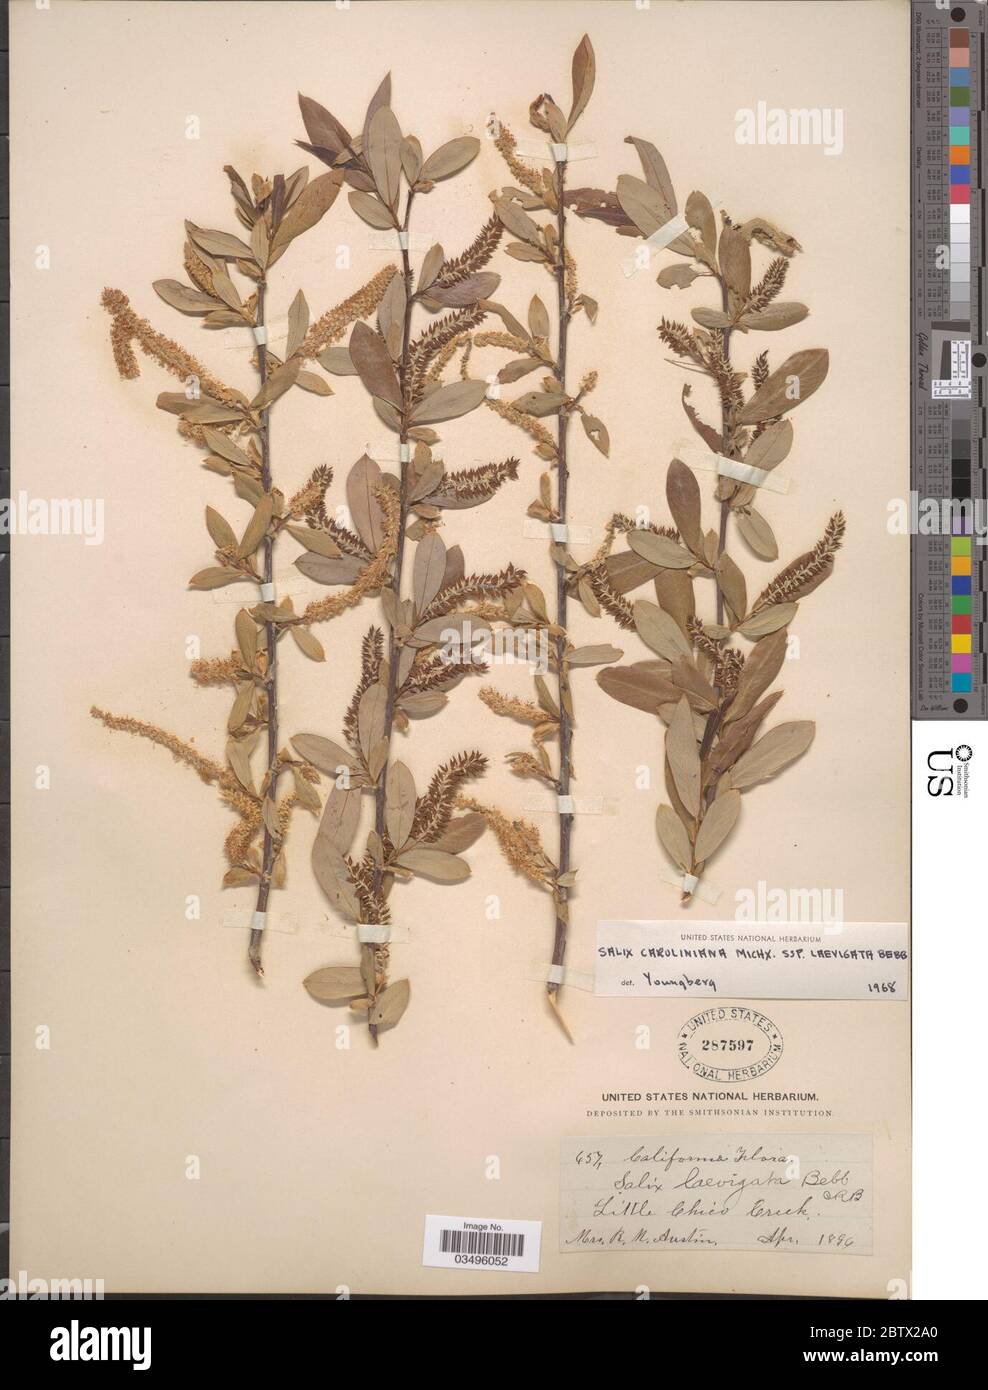 Salix caroliniana subsp laevigata. Stock Photo